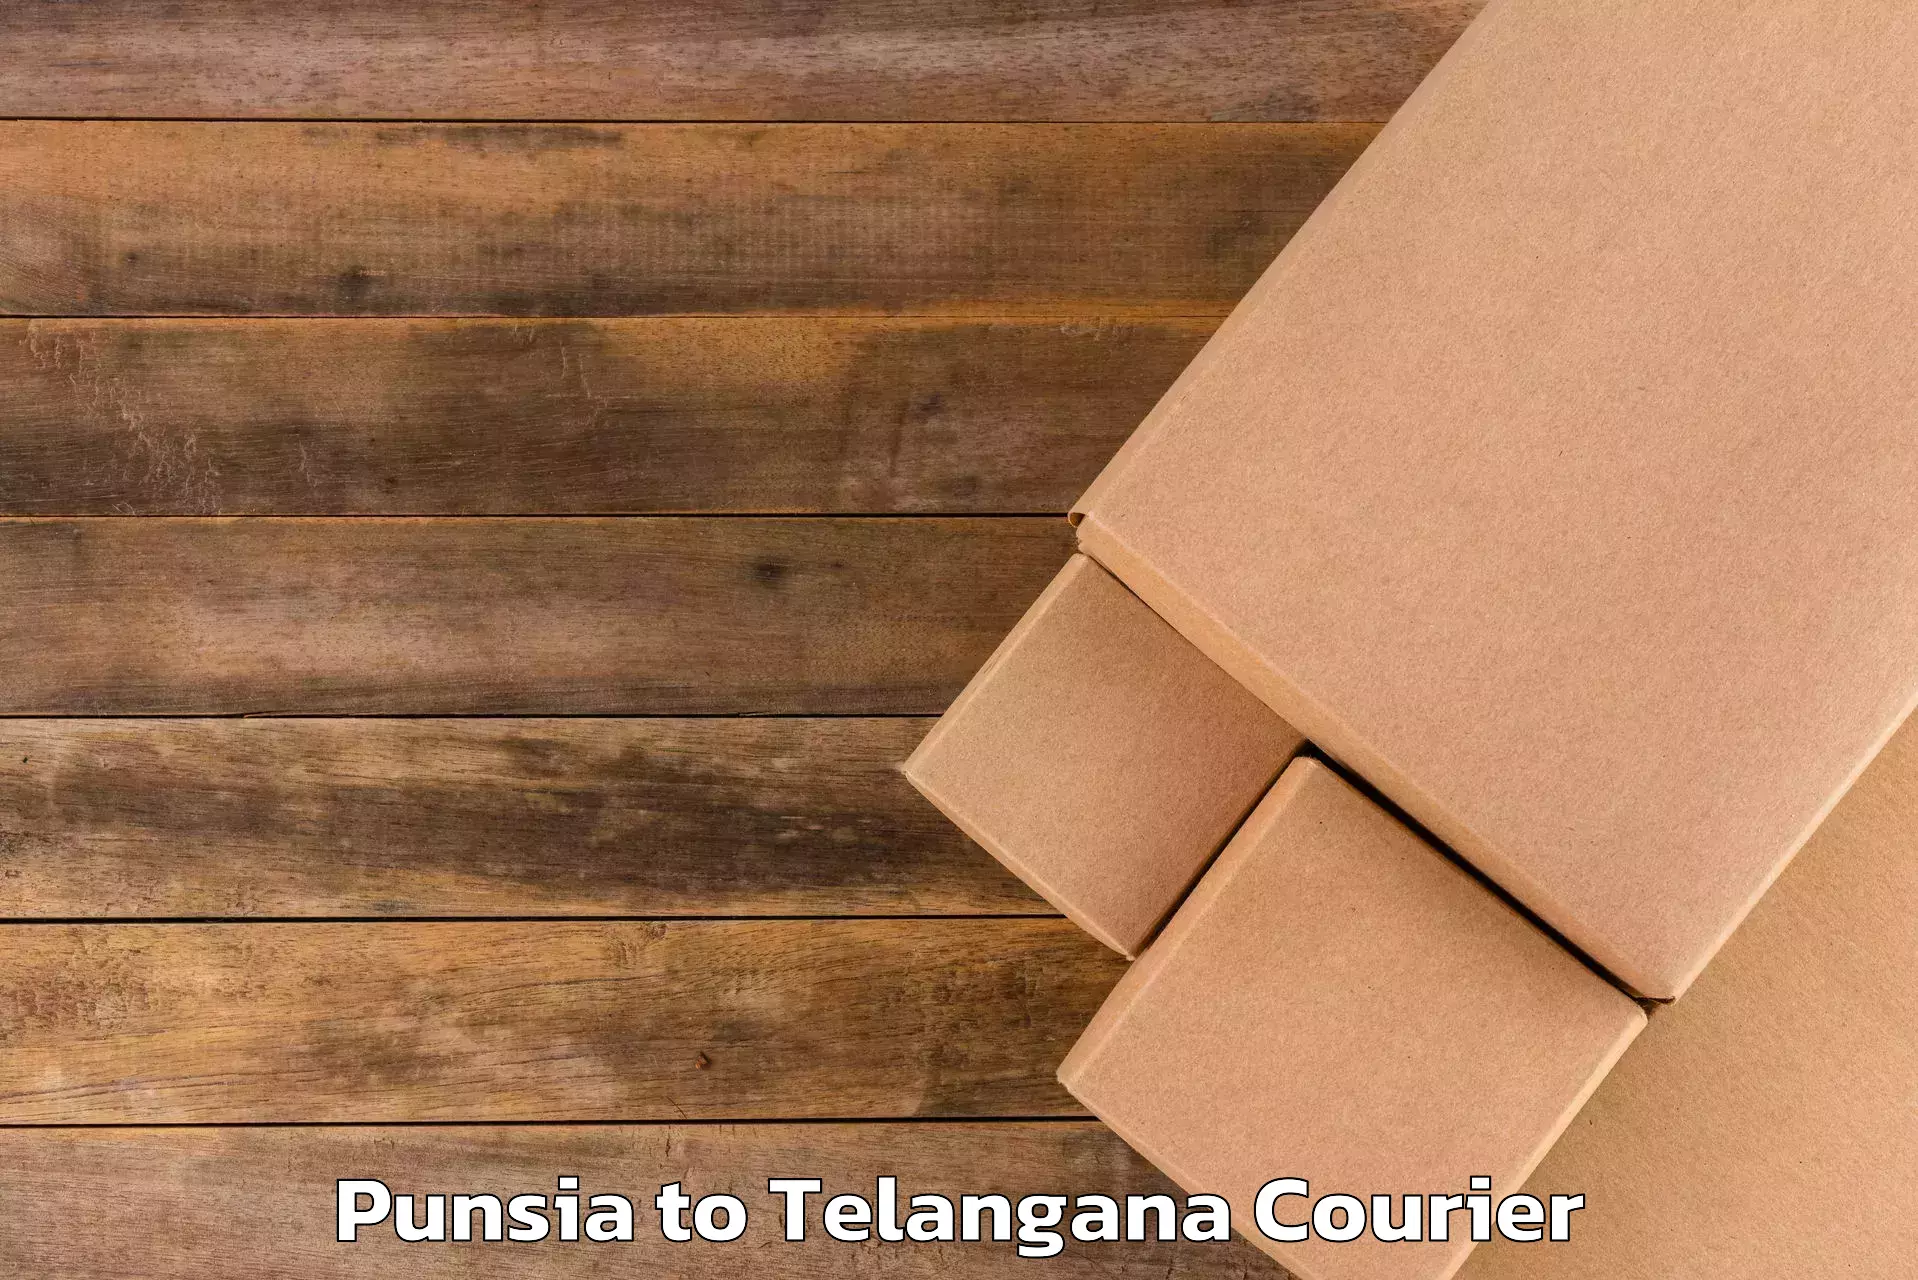 Baggage courier guide Punsia to Kakeshwaram